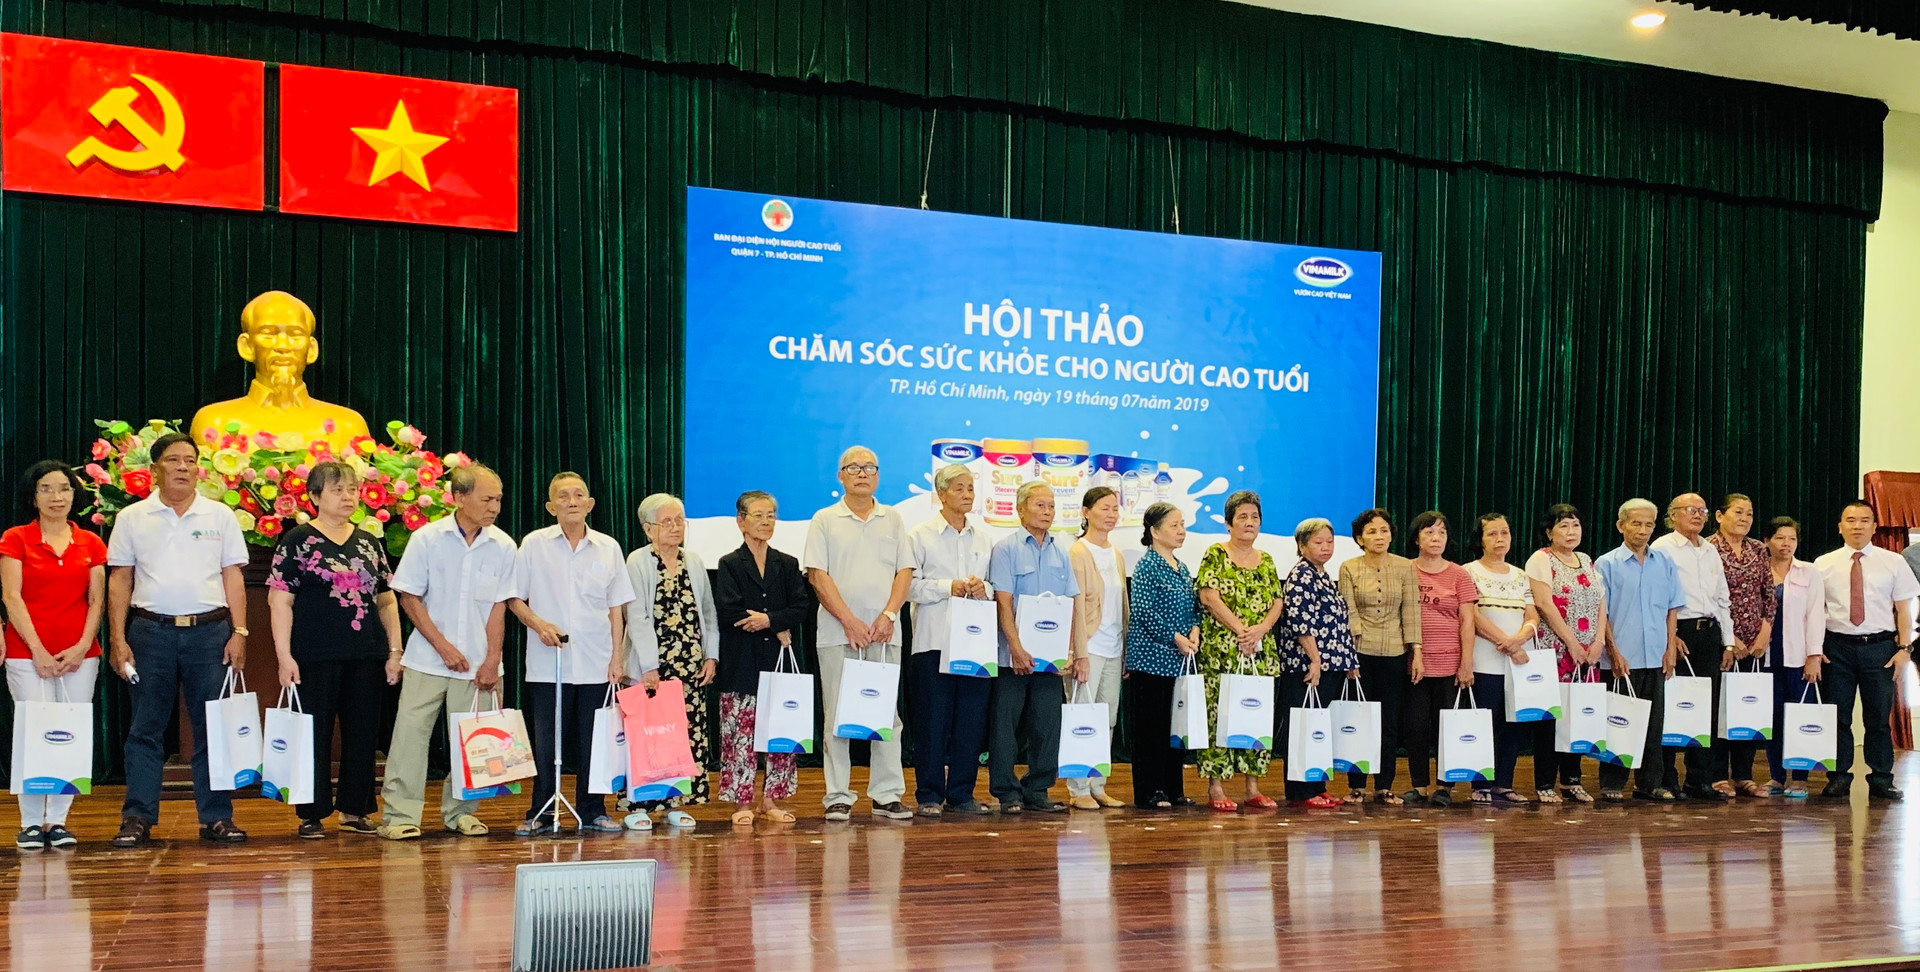 Vinamilk tổ chức nhiều hoạt động ý nghĩa cho người cao tuổi cả nước 6 tháng đầu năm 2019